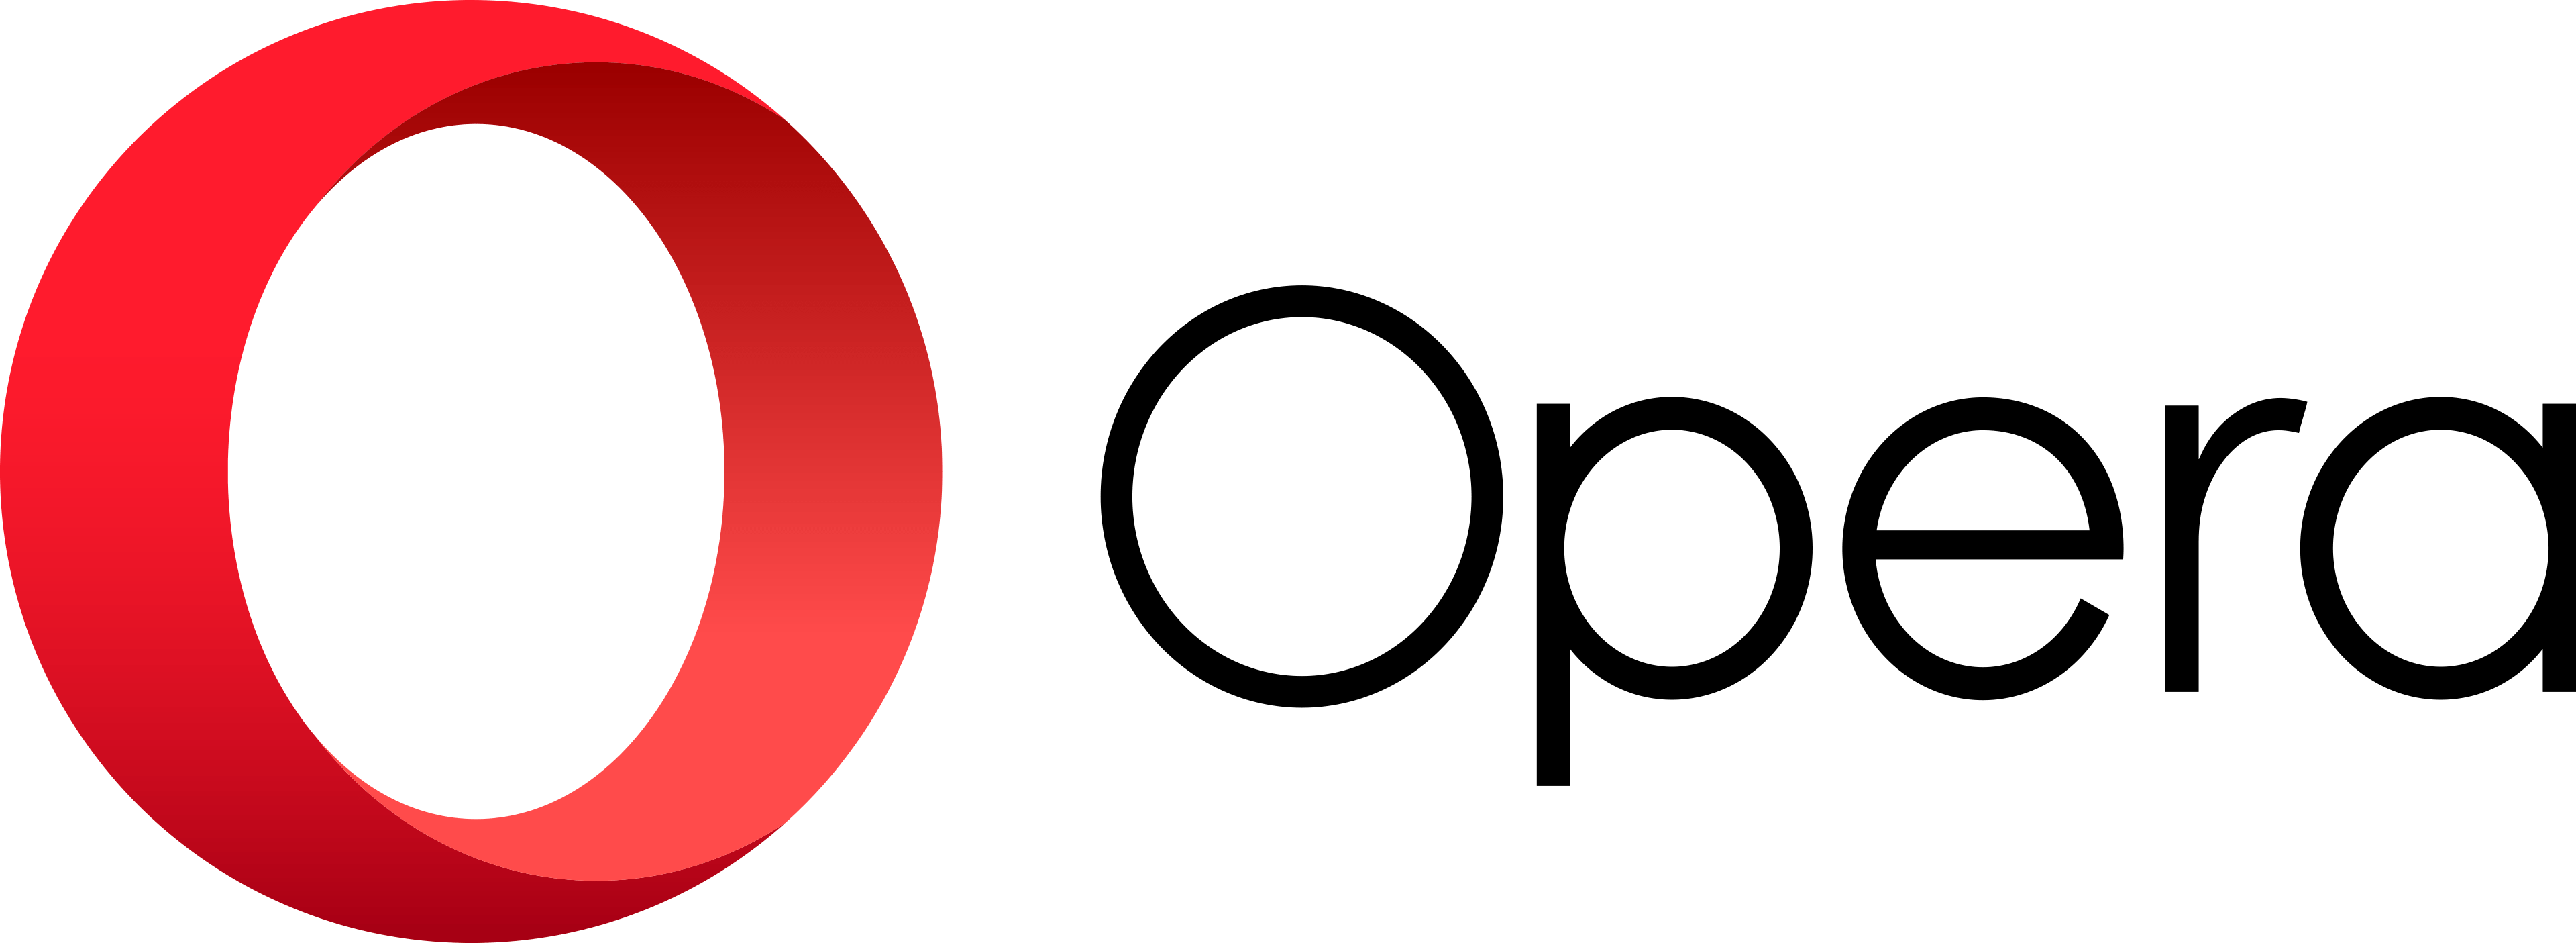 Old Opera Logo - Facebook Flat Vector Logo Download SEEKLOGO Free Logo Image - Free ...